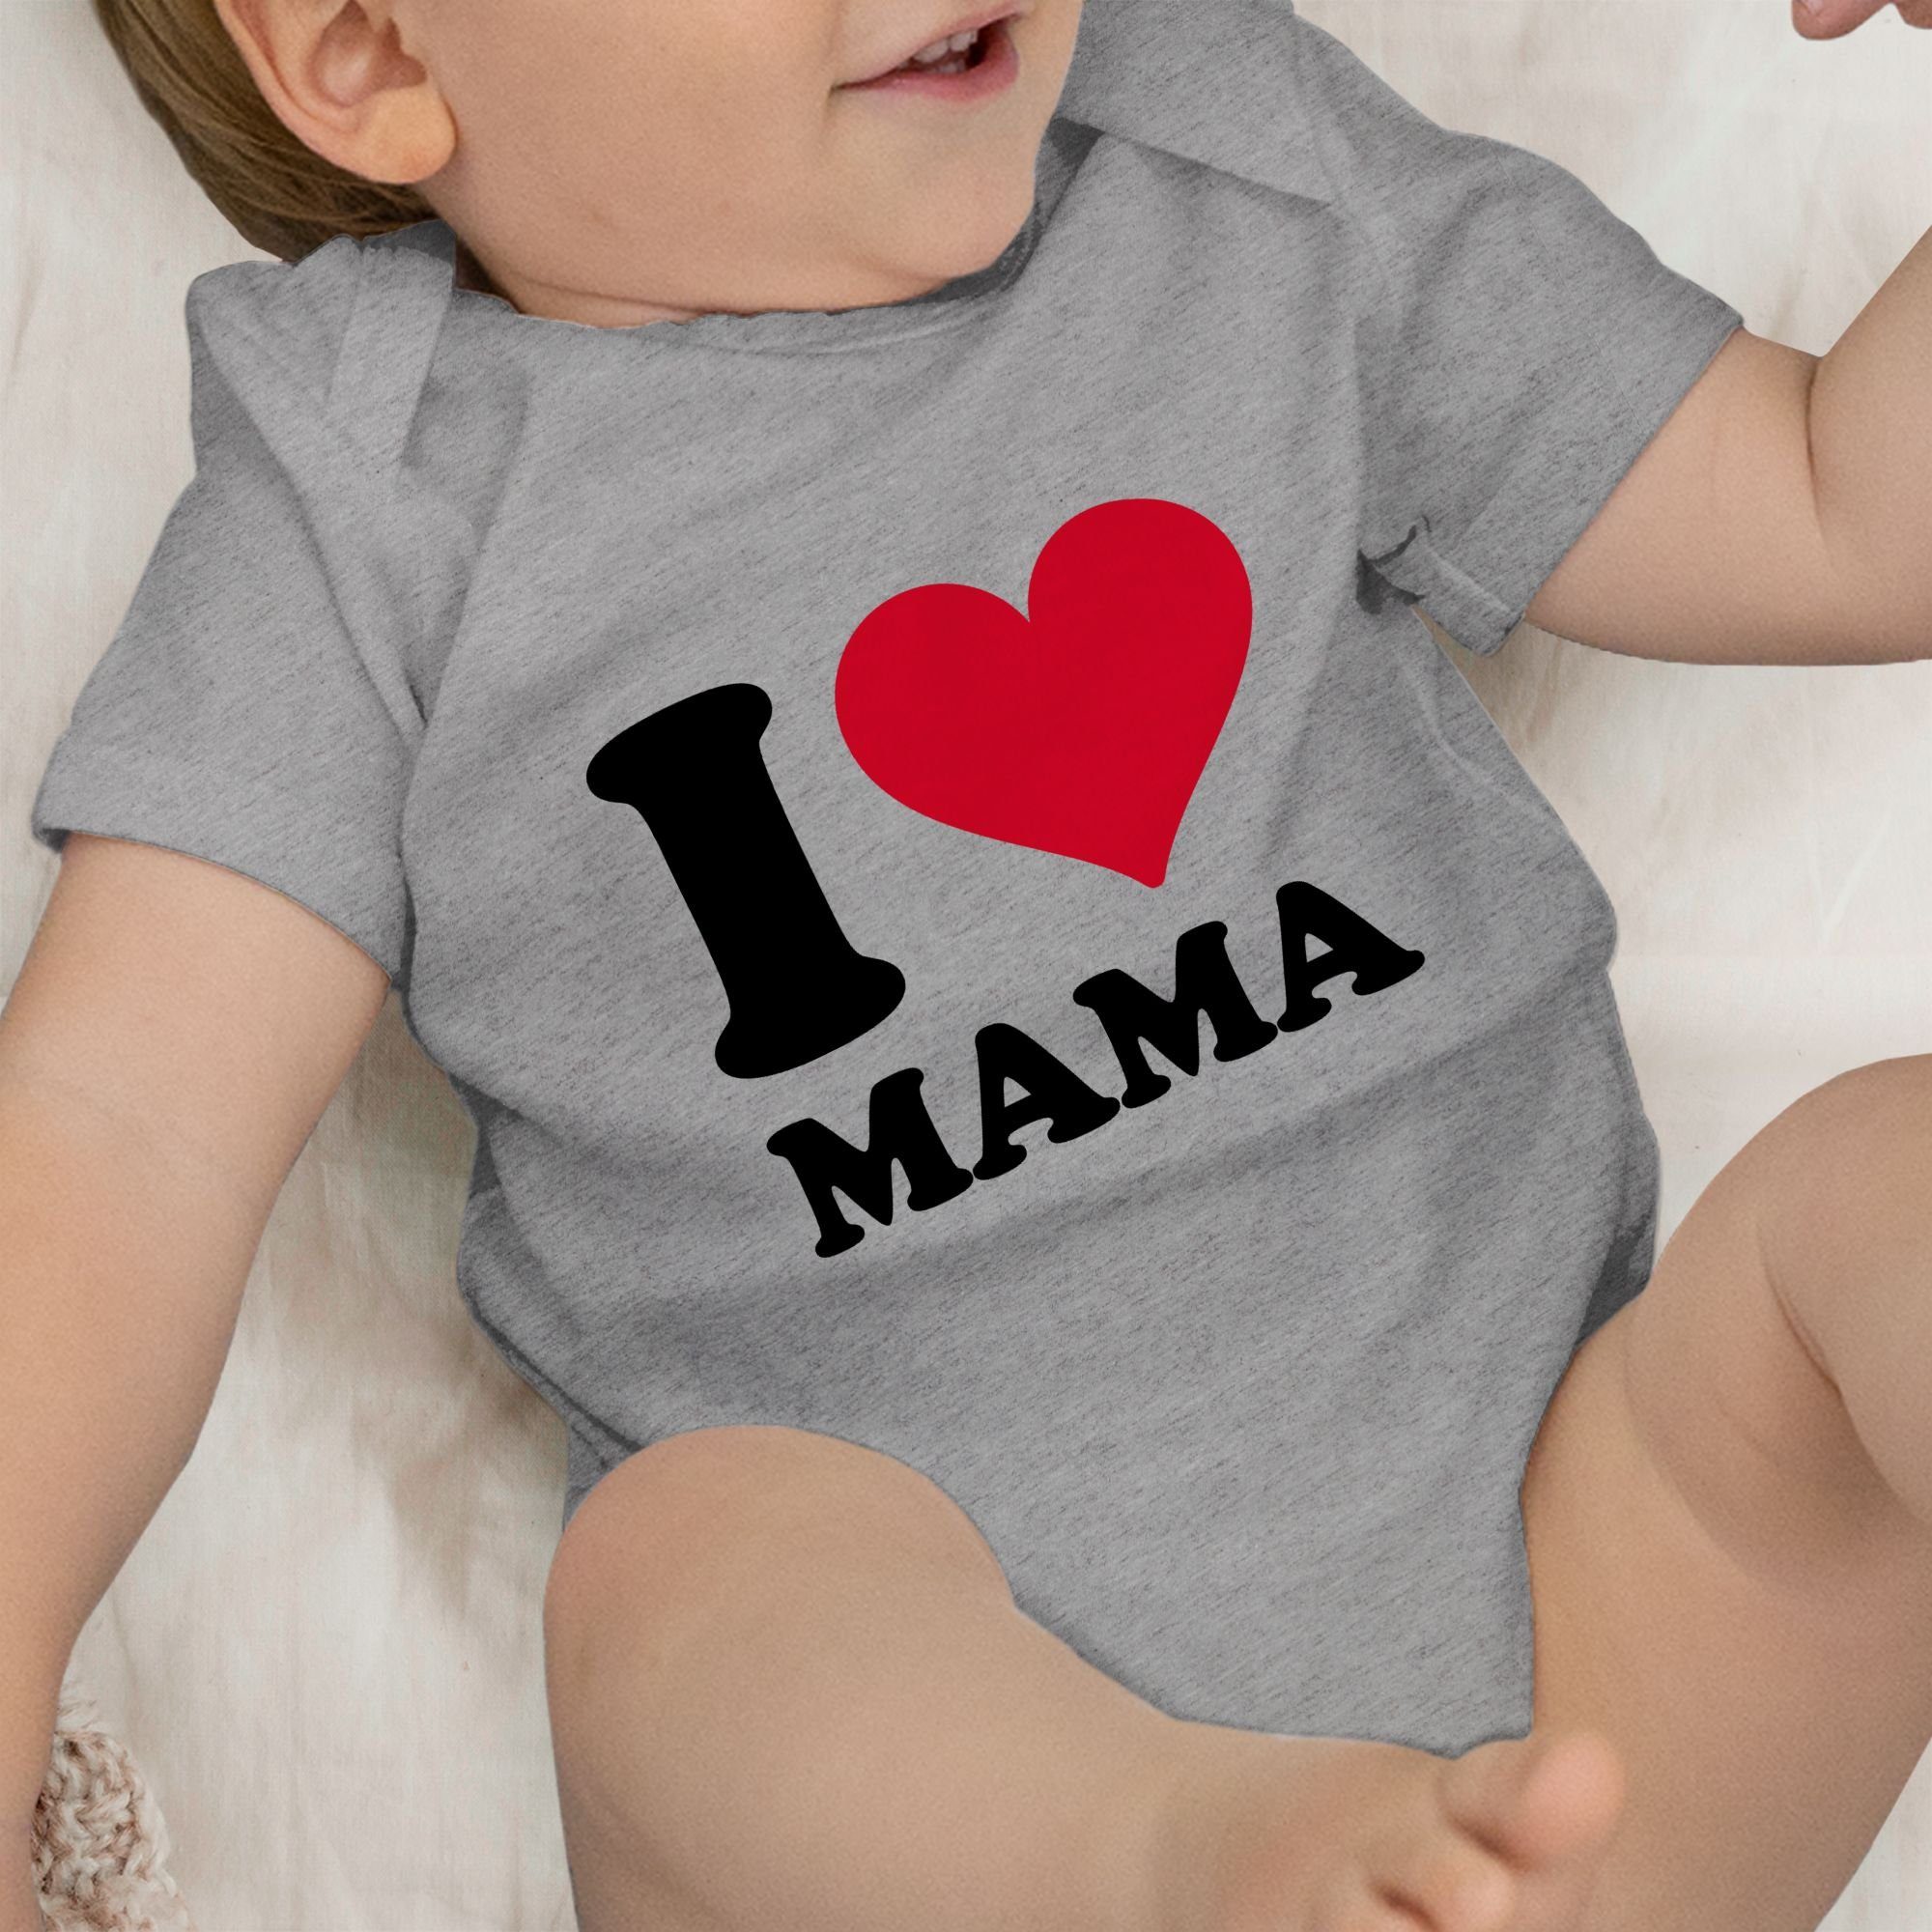 Shirtracer Shirtbody I Love Mama Grau Muttertagsgeschenk meliert 2 (1-tlg)